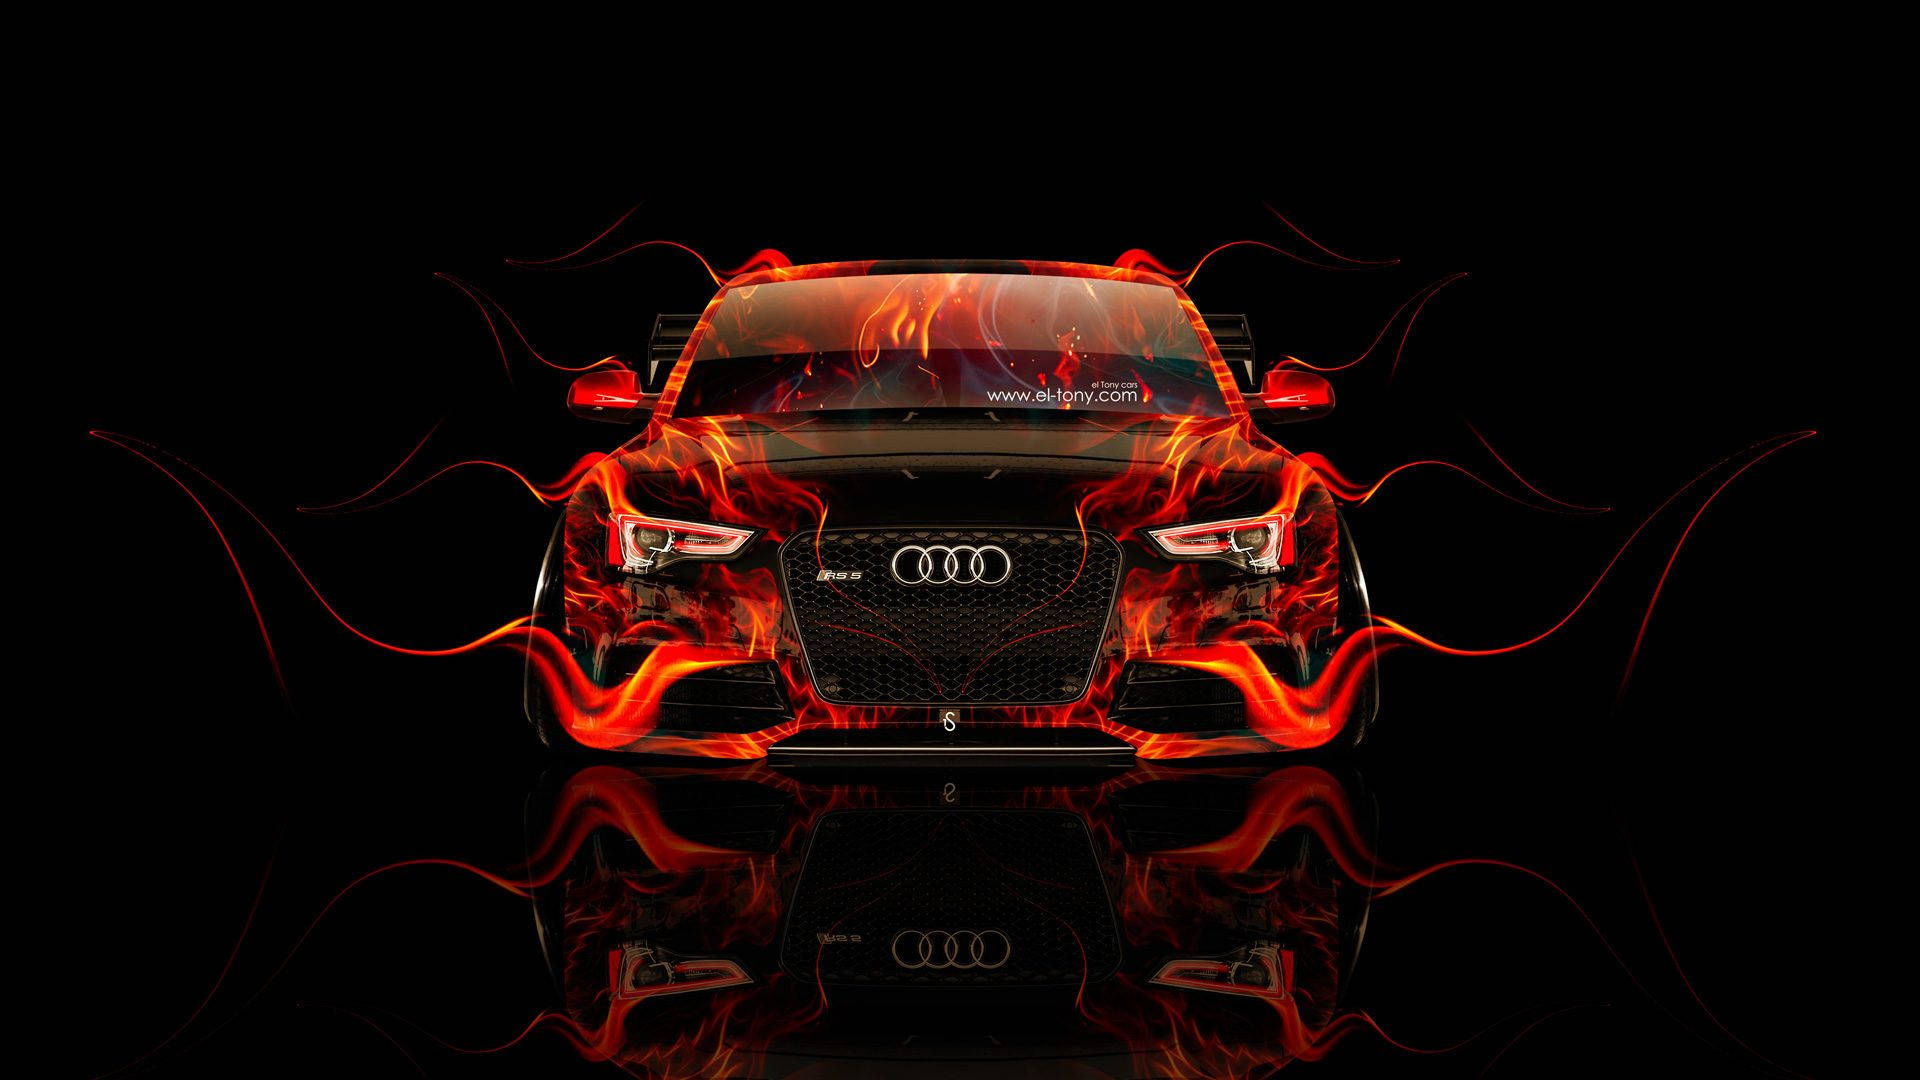 Audi For Desktop Wallpapers